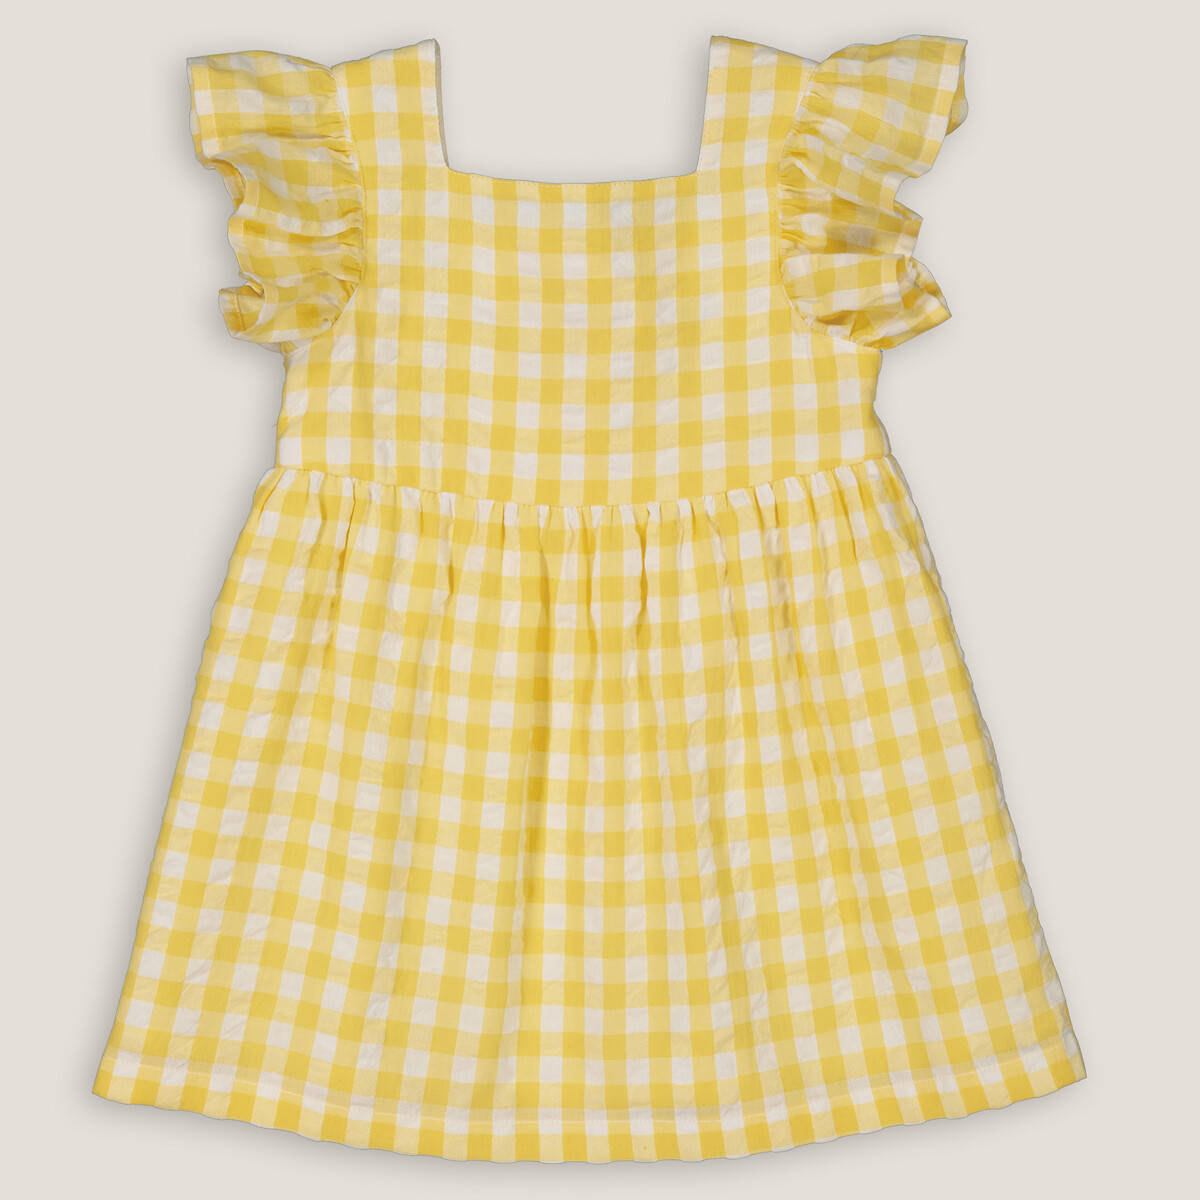 Платье Нарядное в клетку 3 года - 94 см желтый